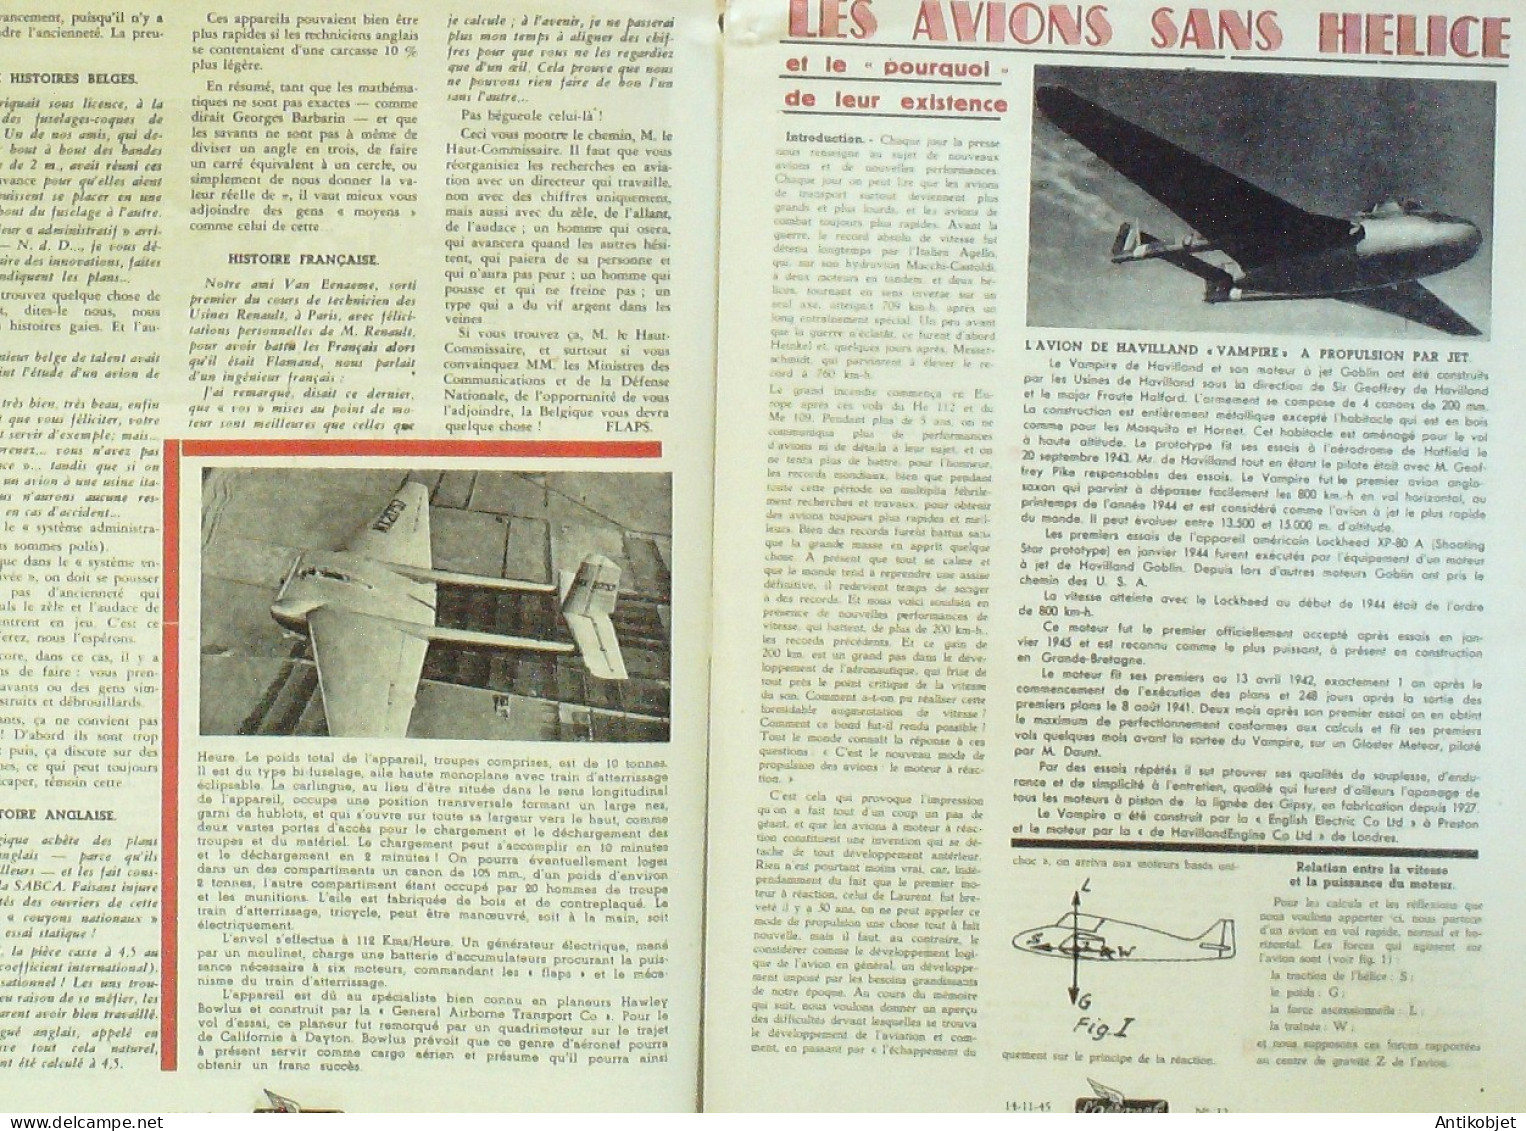 L'Aéronef 1945 N°12 Junkers 004 Wing XCG 16 Havilland Vampire - Handbücher